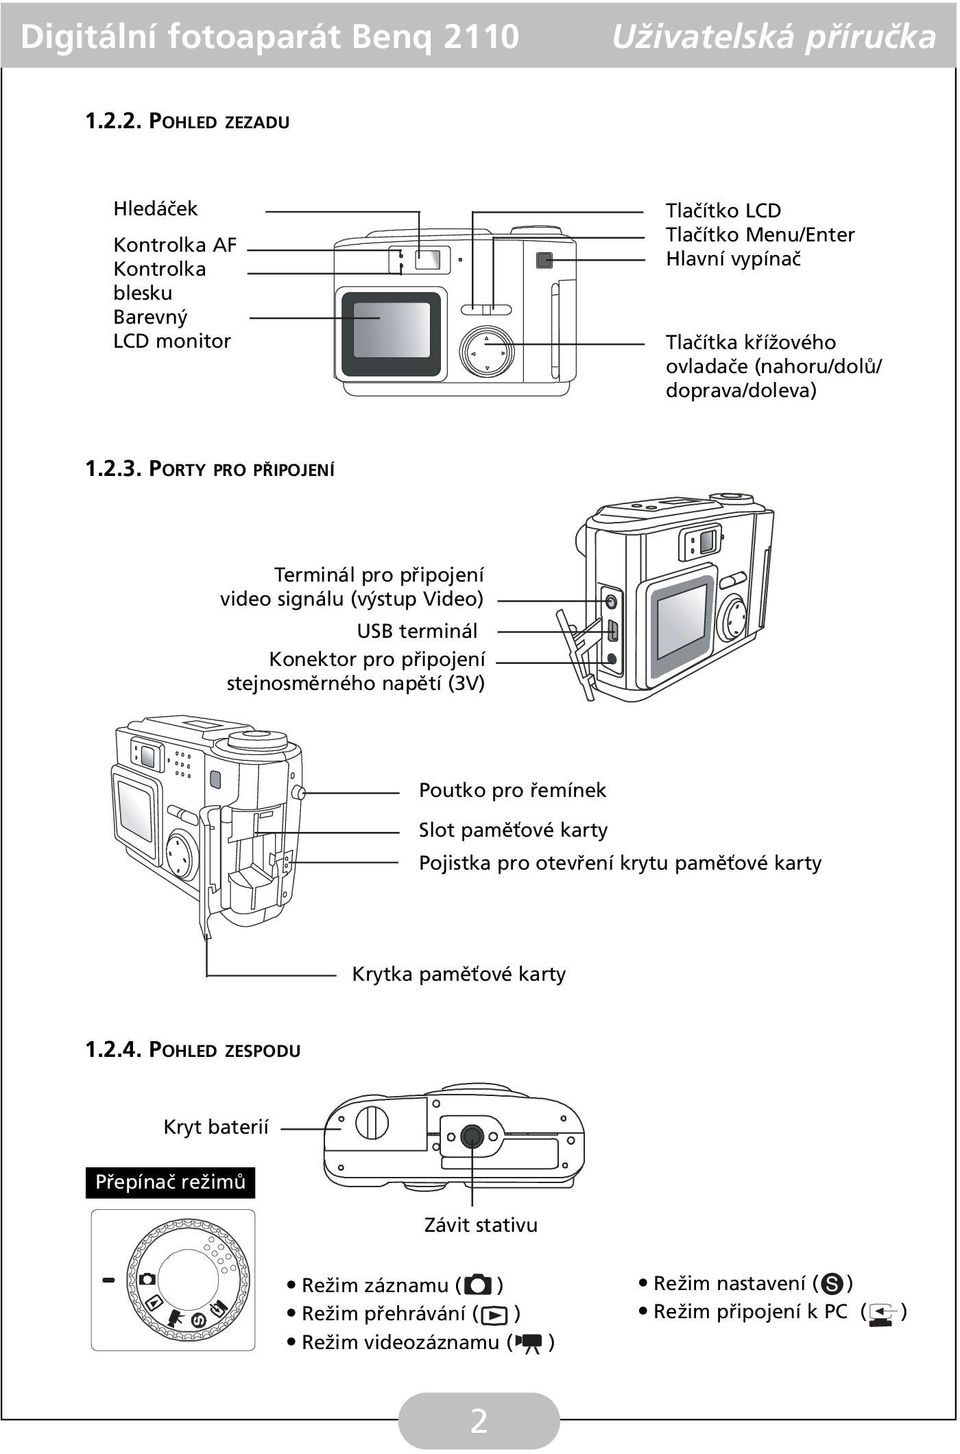 PORTY PRO PŘIPOJENÍ Terminál pro připojení video signálu (výstup Video) USB terminál Konektor pro připojení stejnosměrného napětí (3V) Poutko pro